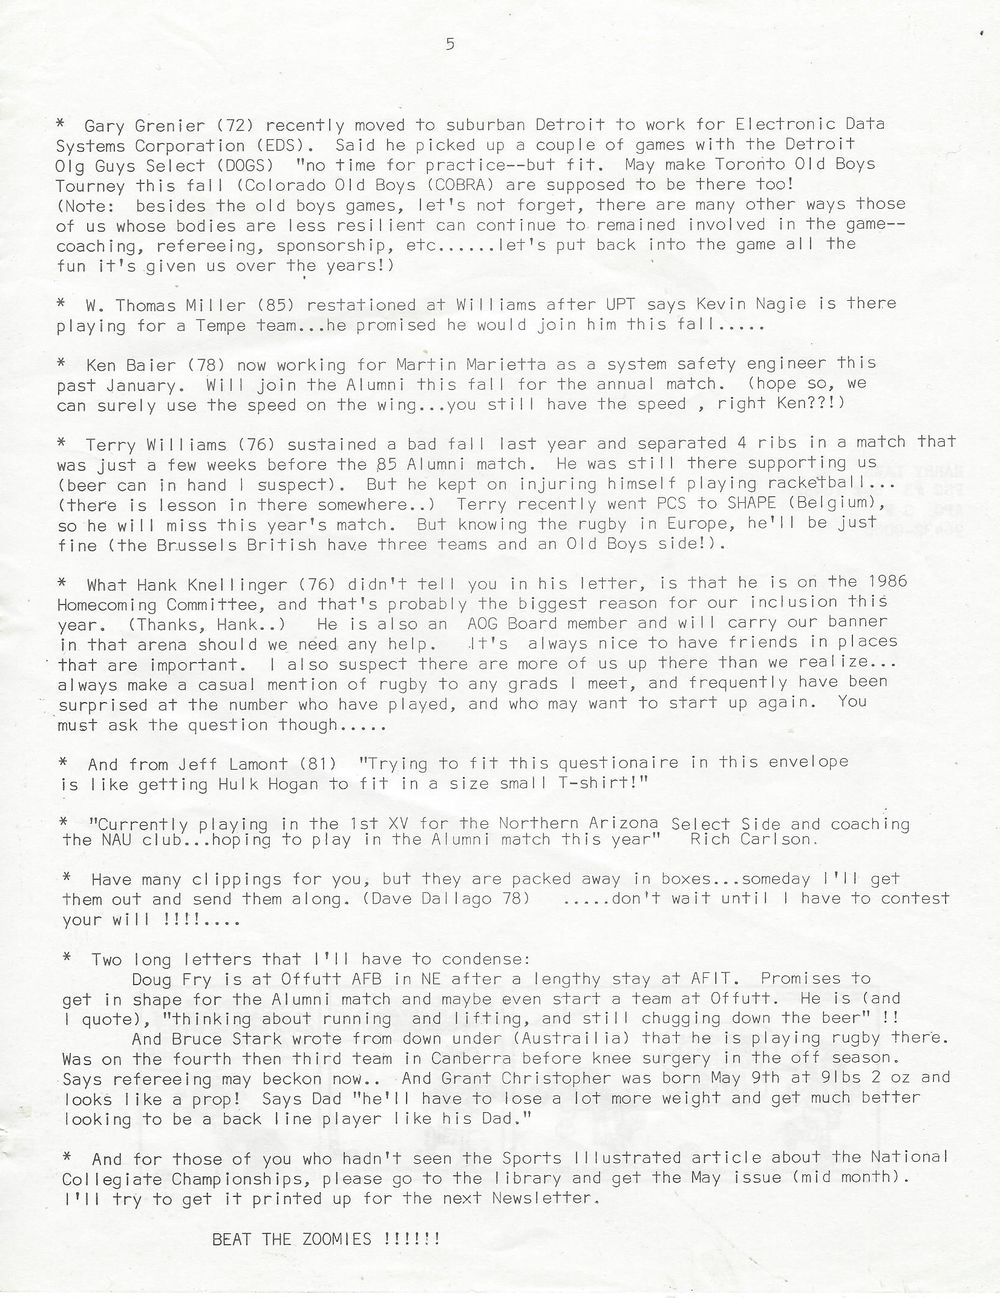 1986 08 Newsletter 5.jpg